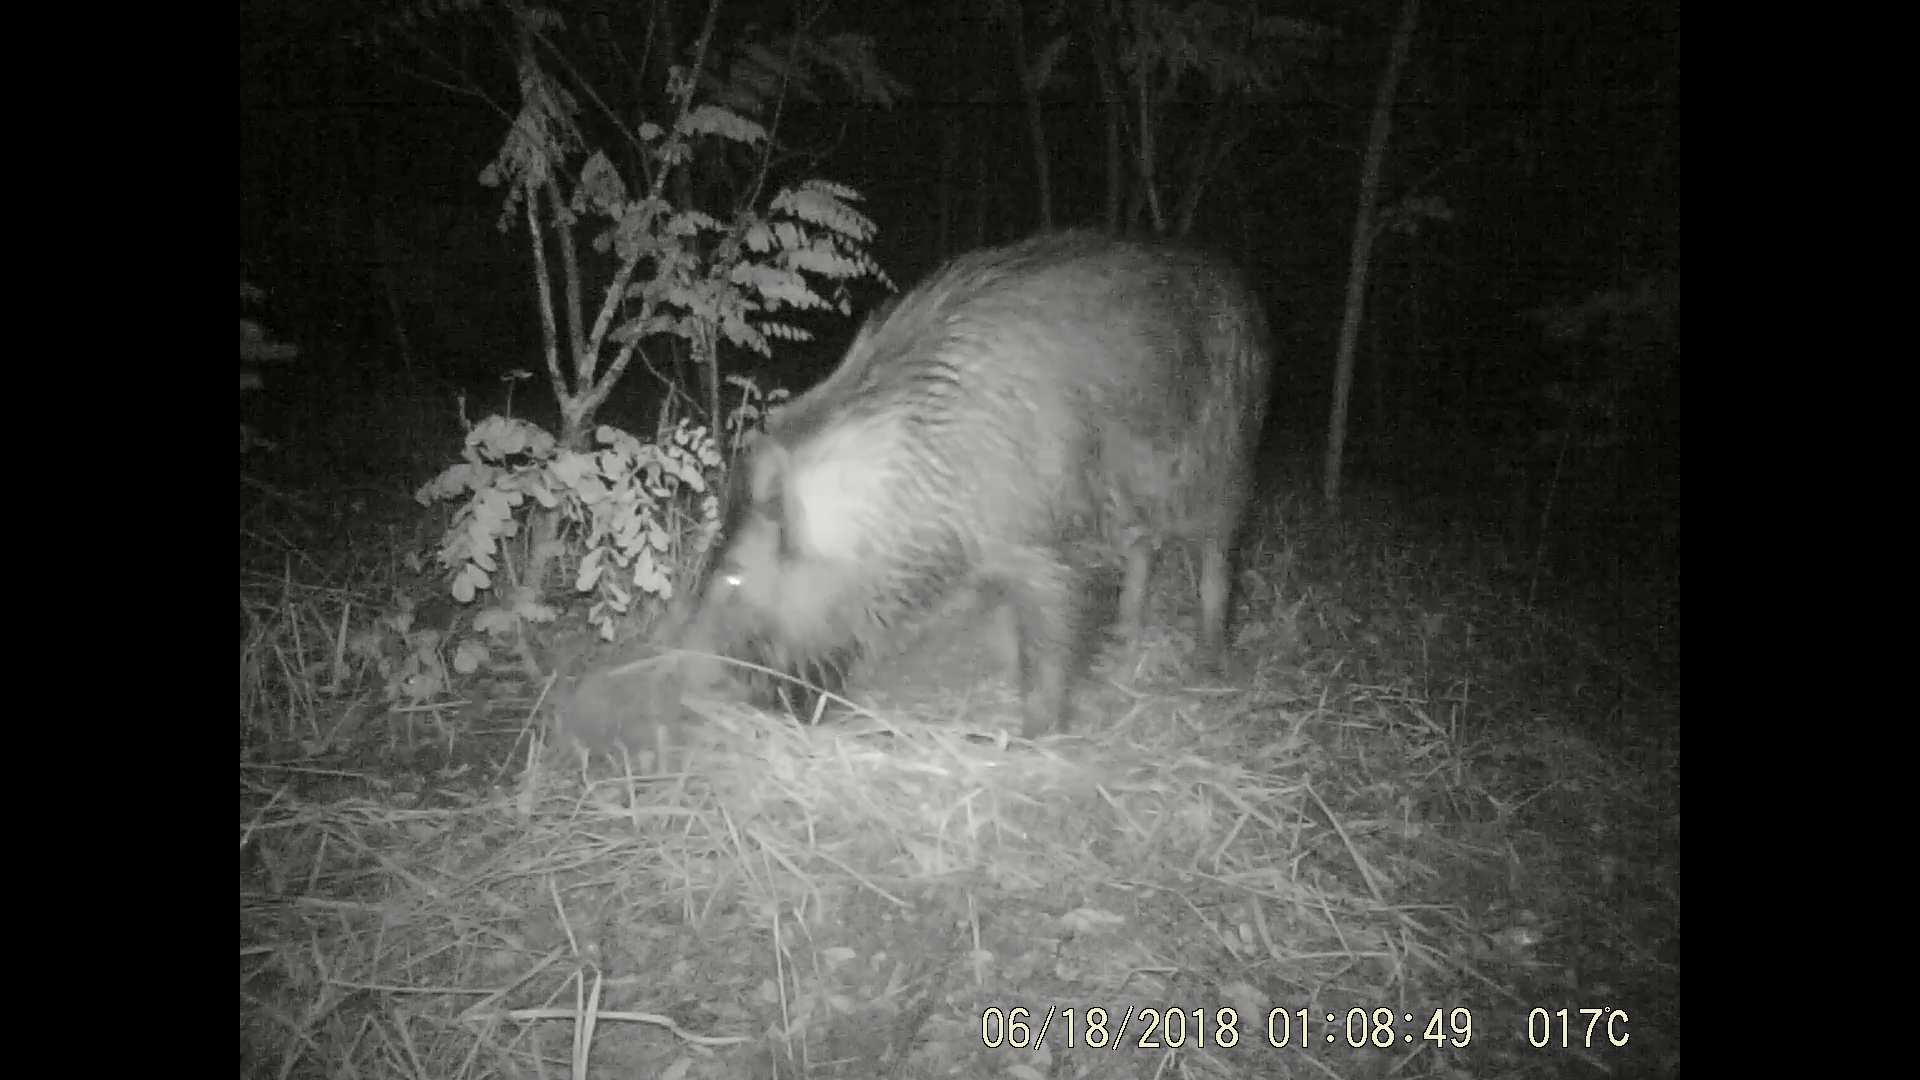 Monitorización de los de hábitos nocturnos de los mamíferos, a través de las cámaras instaladas